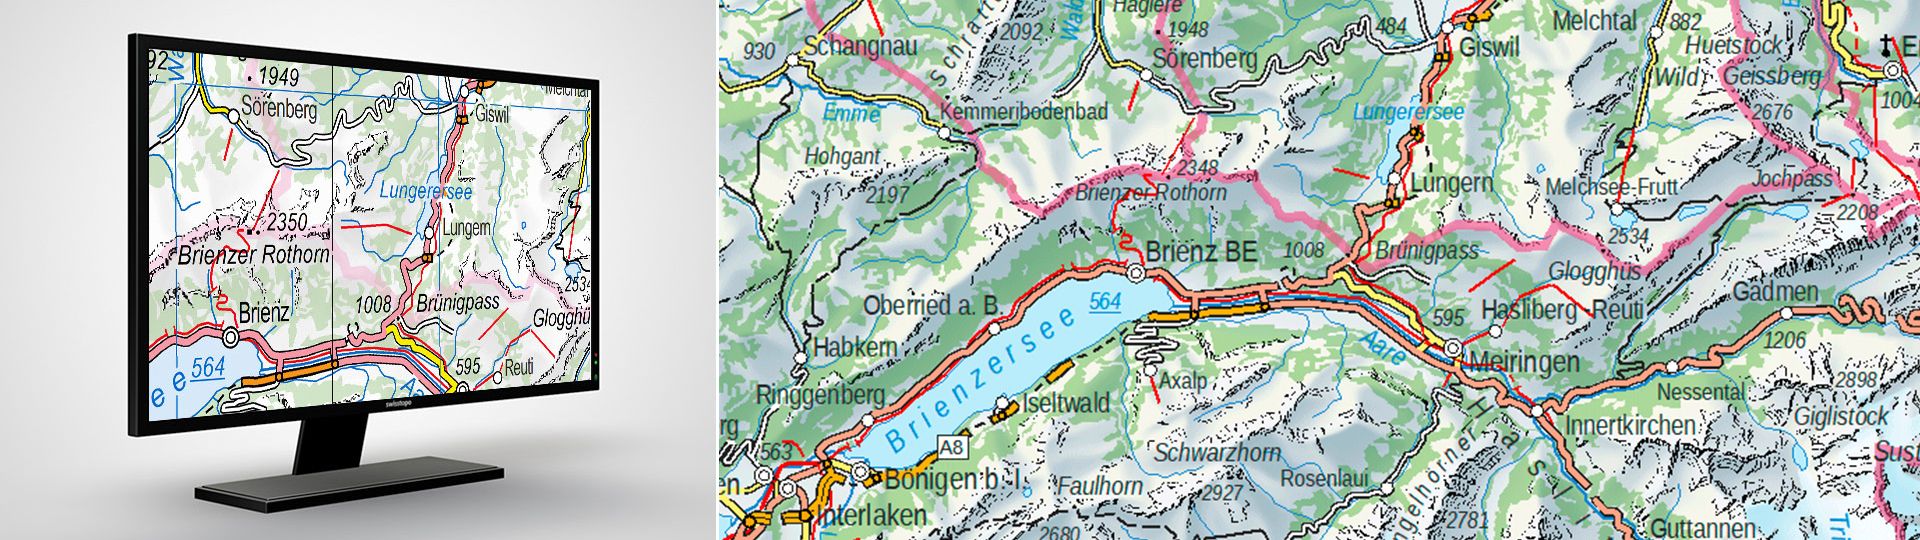 Swiss Map Vector 500: carta geografica vettoriale della Svizzera 1:500 000